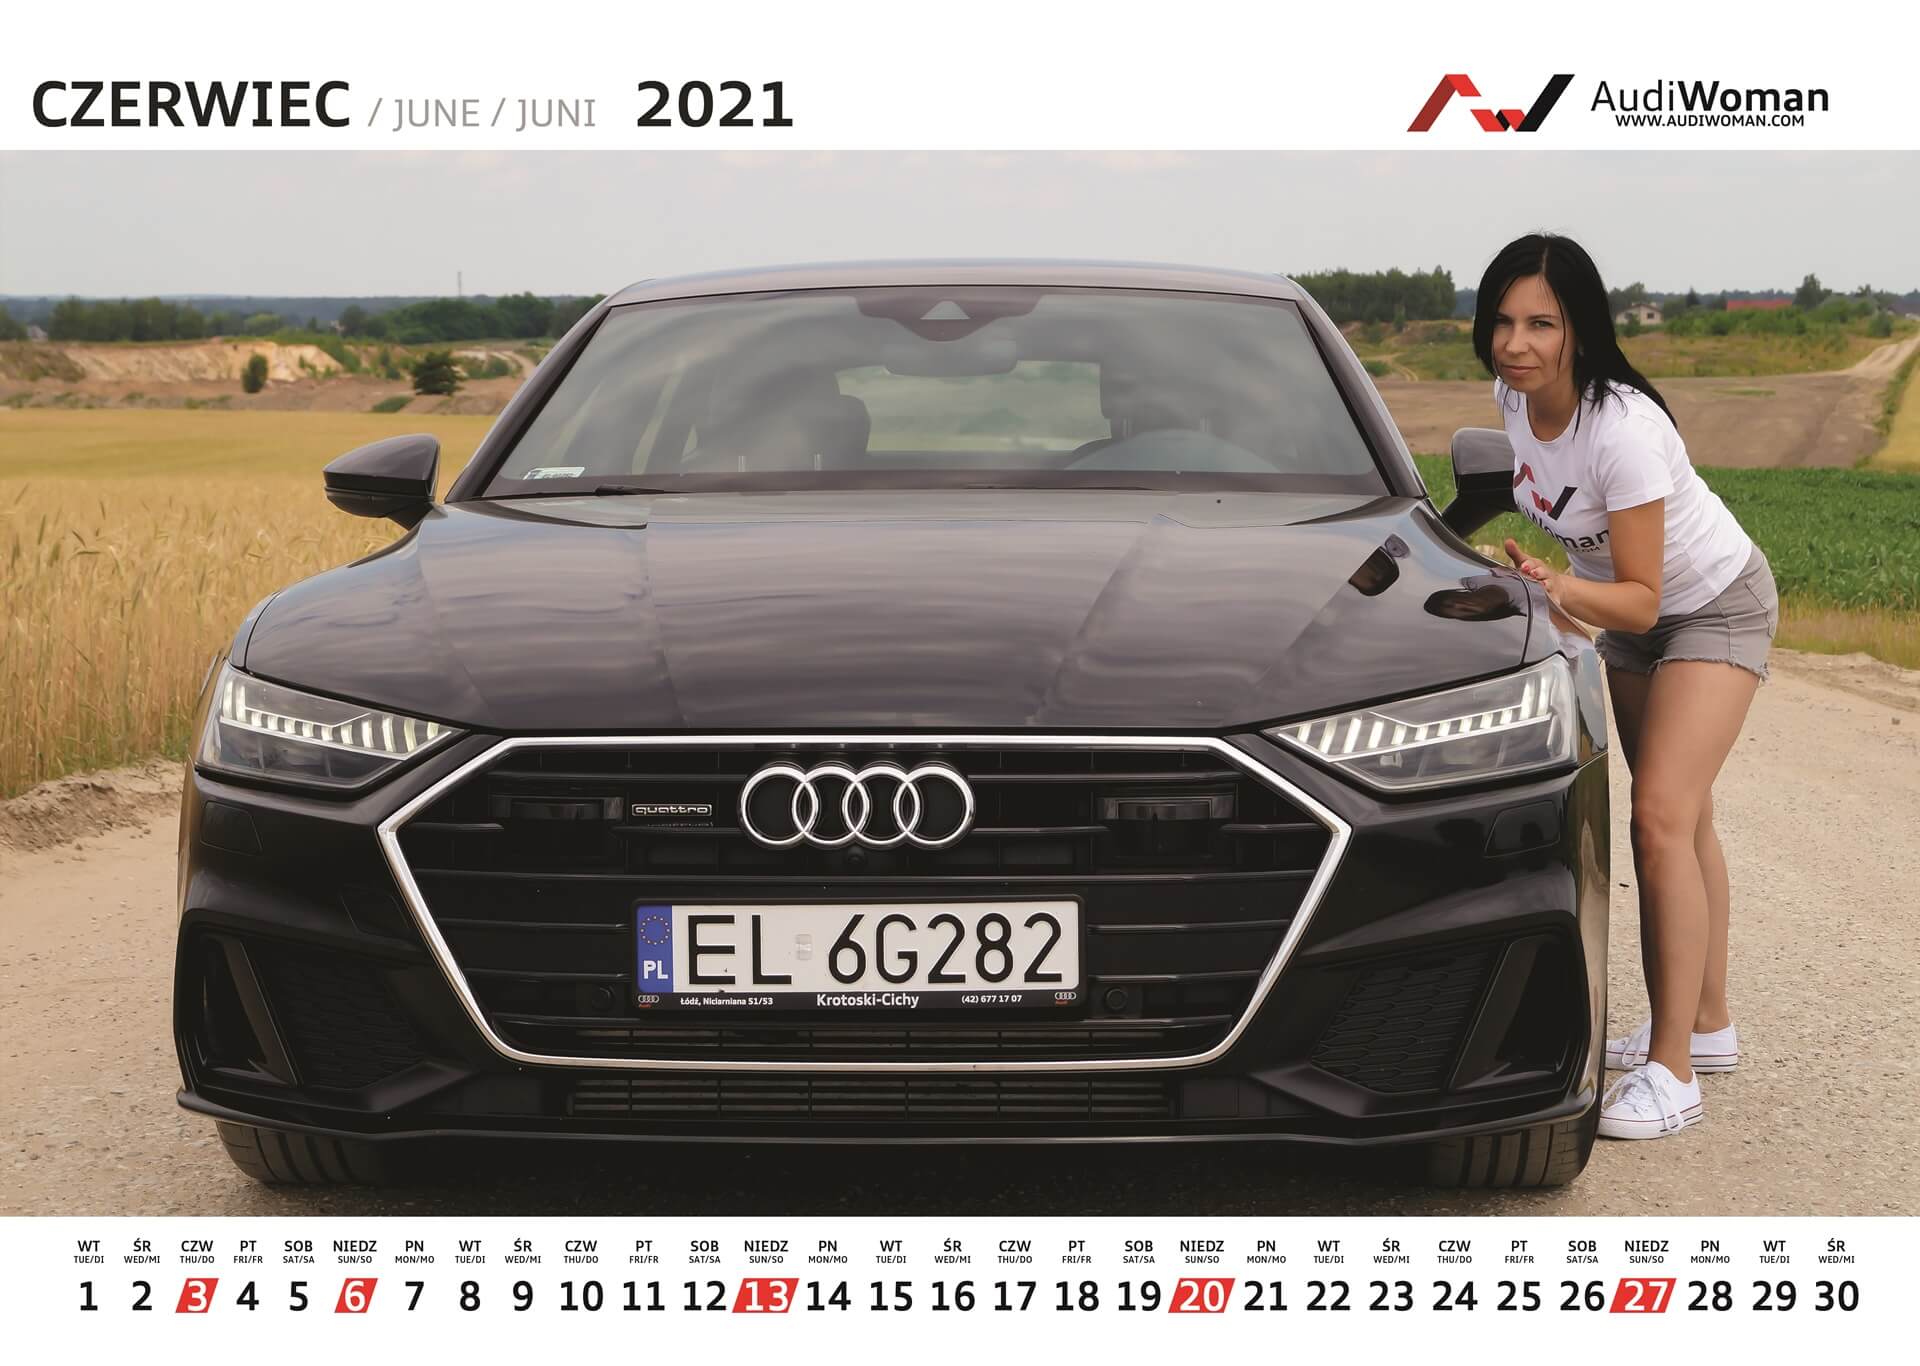 Kalendarz Audi Woman 2021r